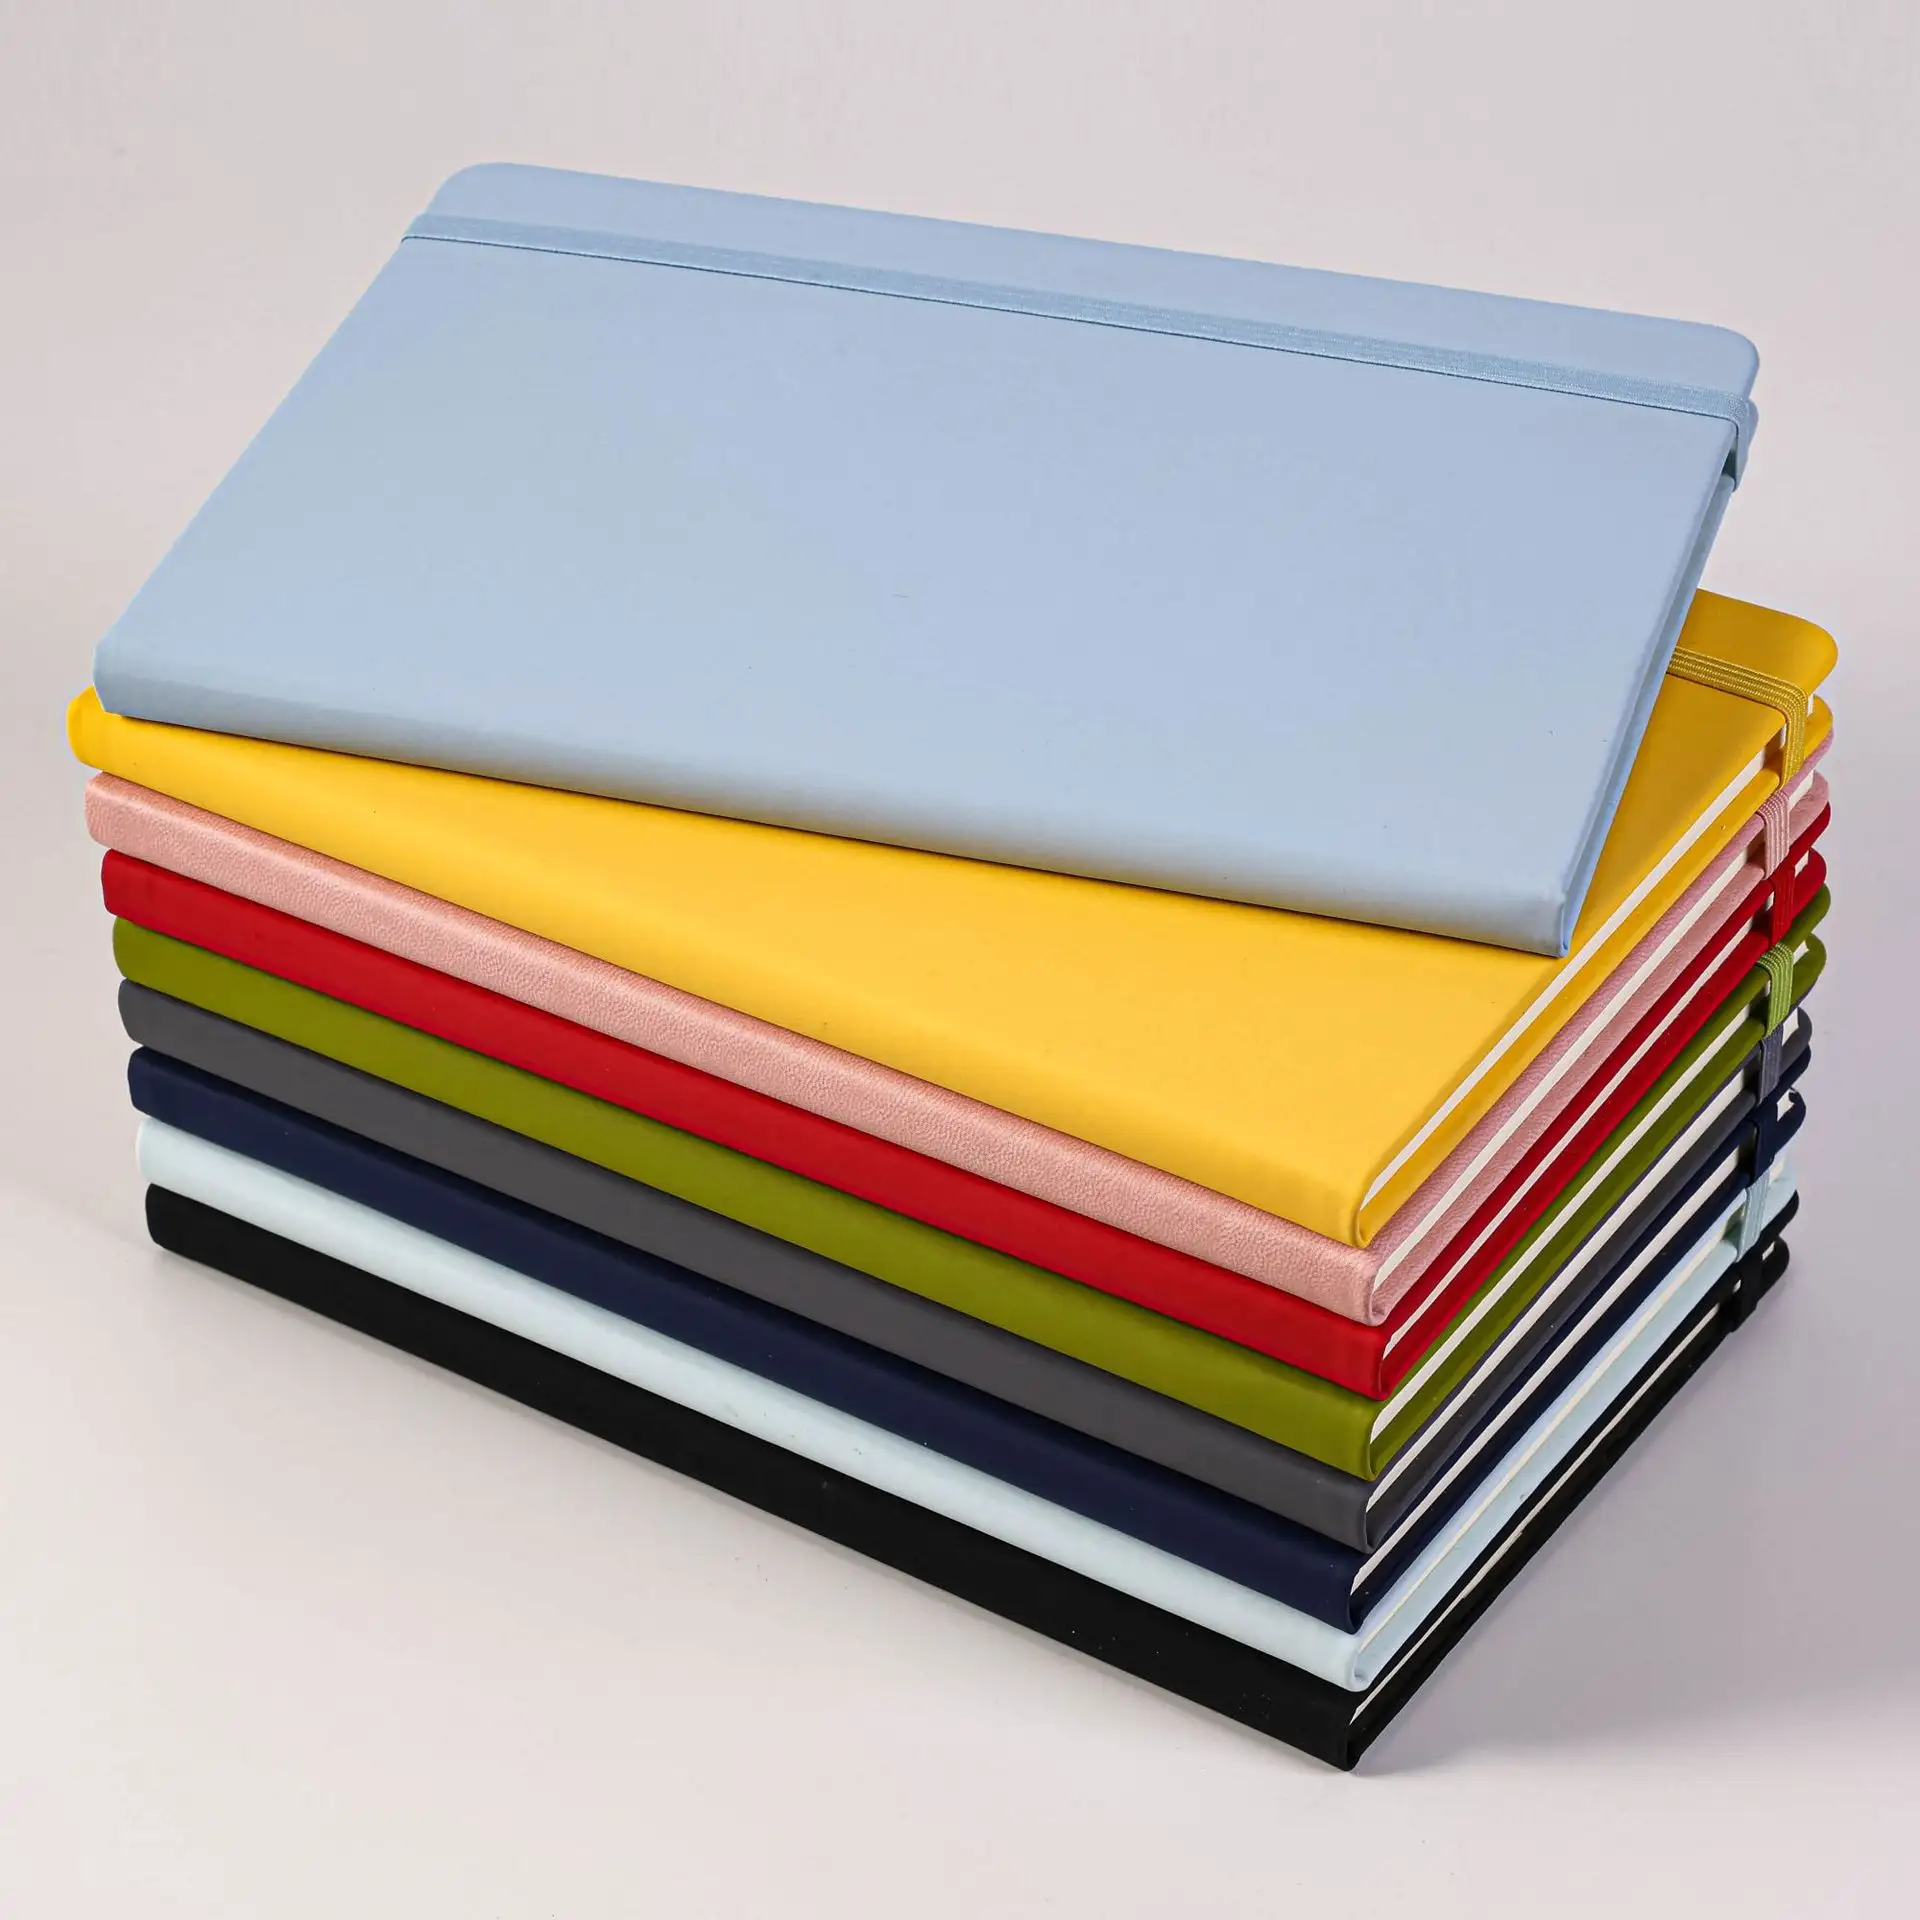 Notebook promozionale con copertina rigida personalizzabile per notebook a righe a5